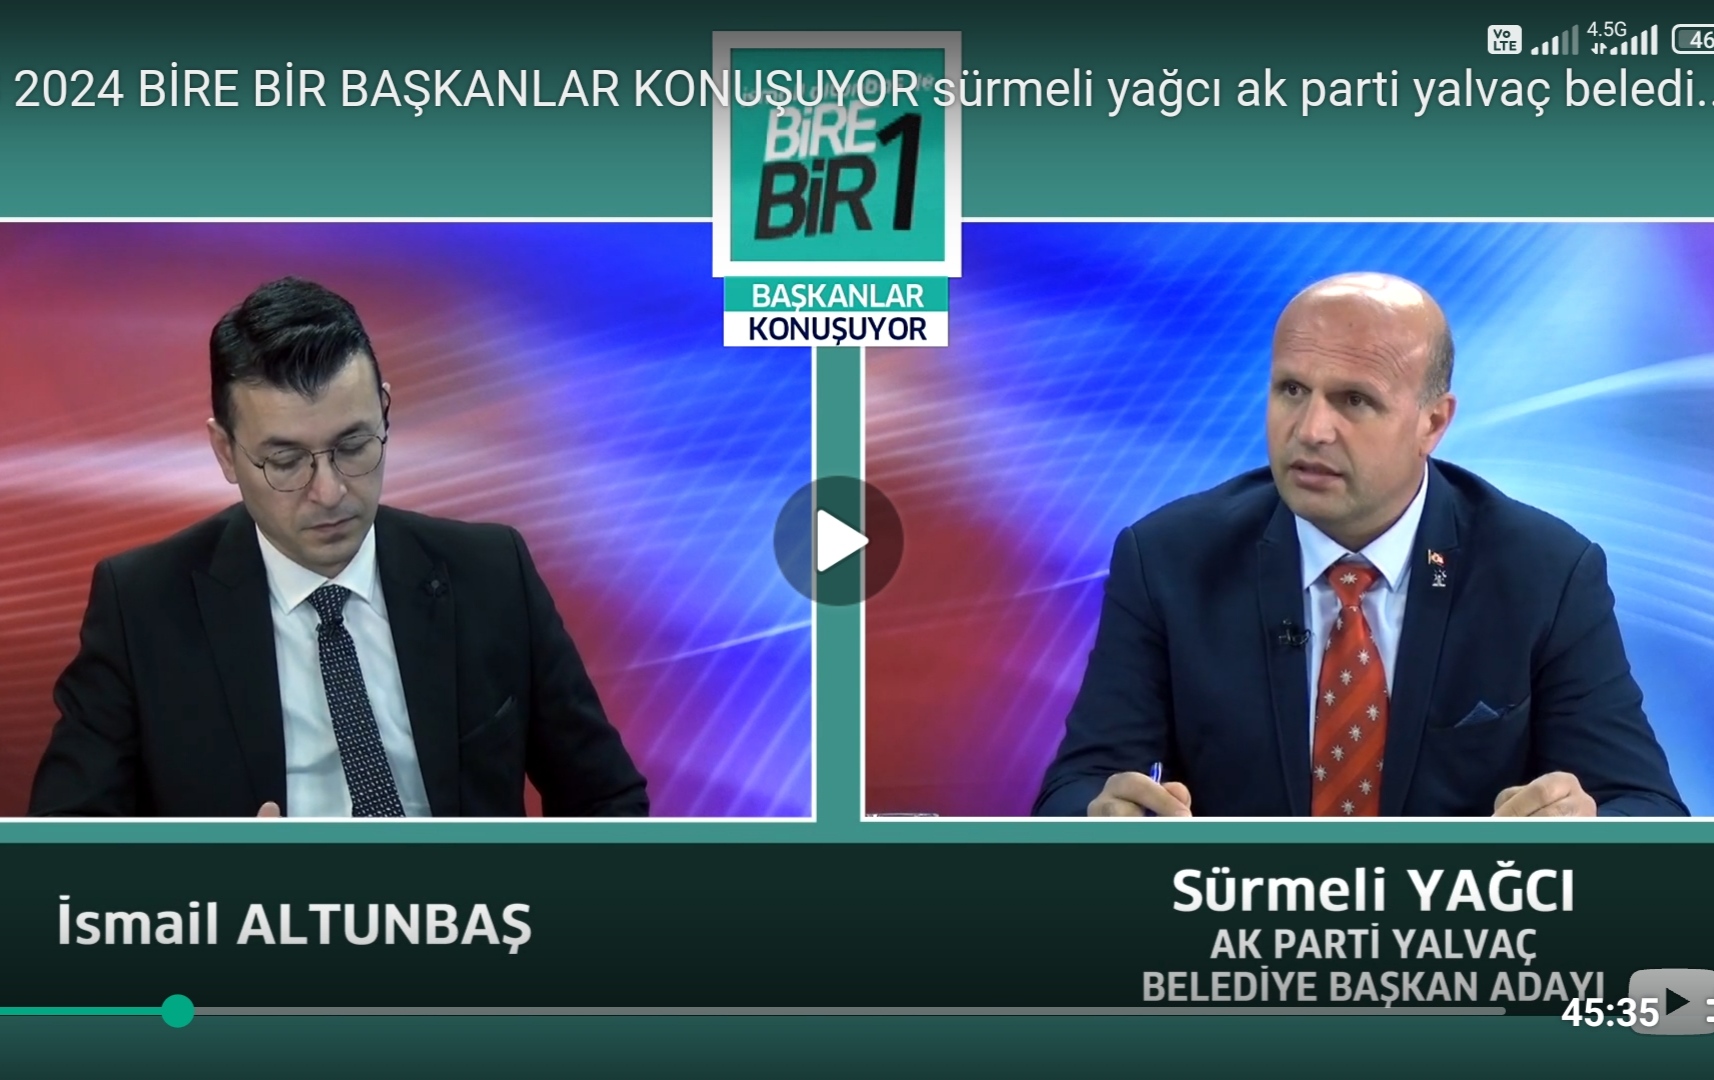 Sürmeli Yağcı, Kanal 32’de projelerini anlattı